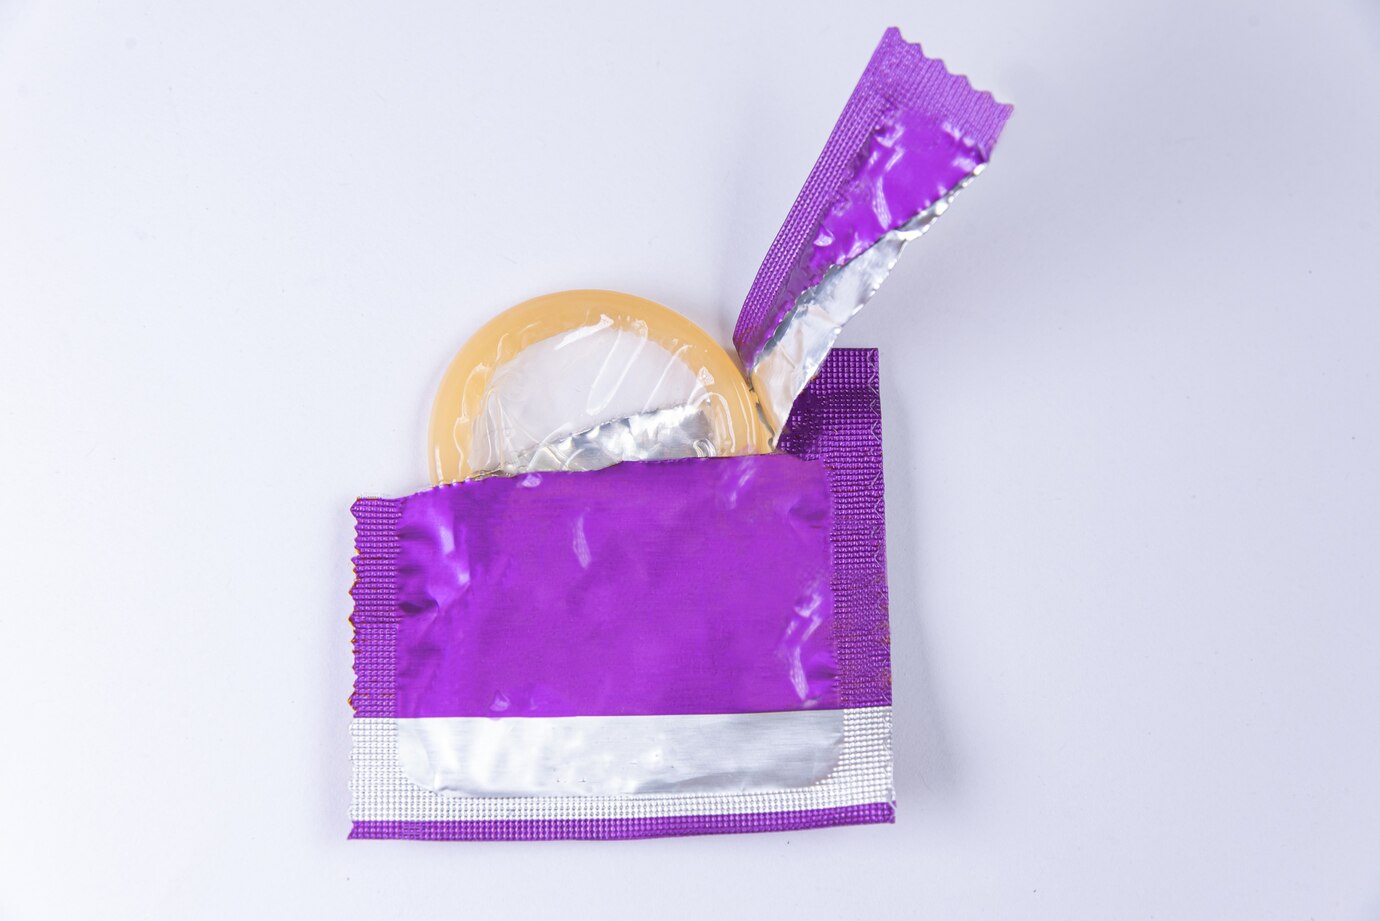 rozbalený kondom